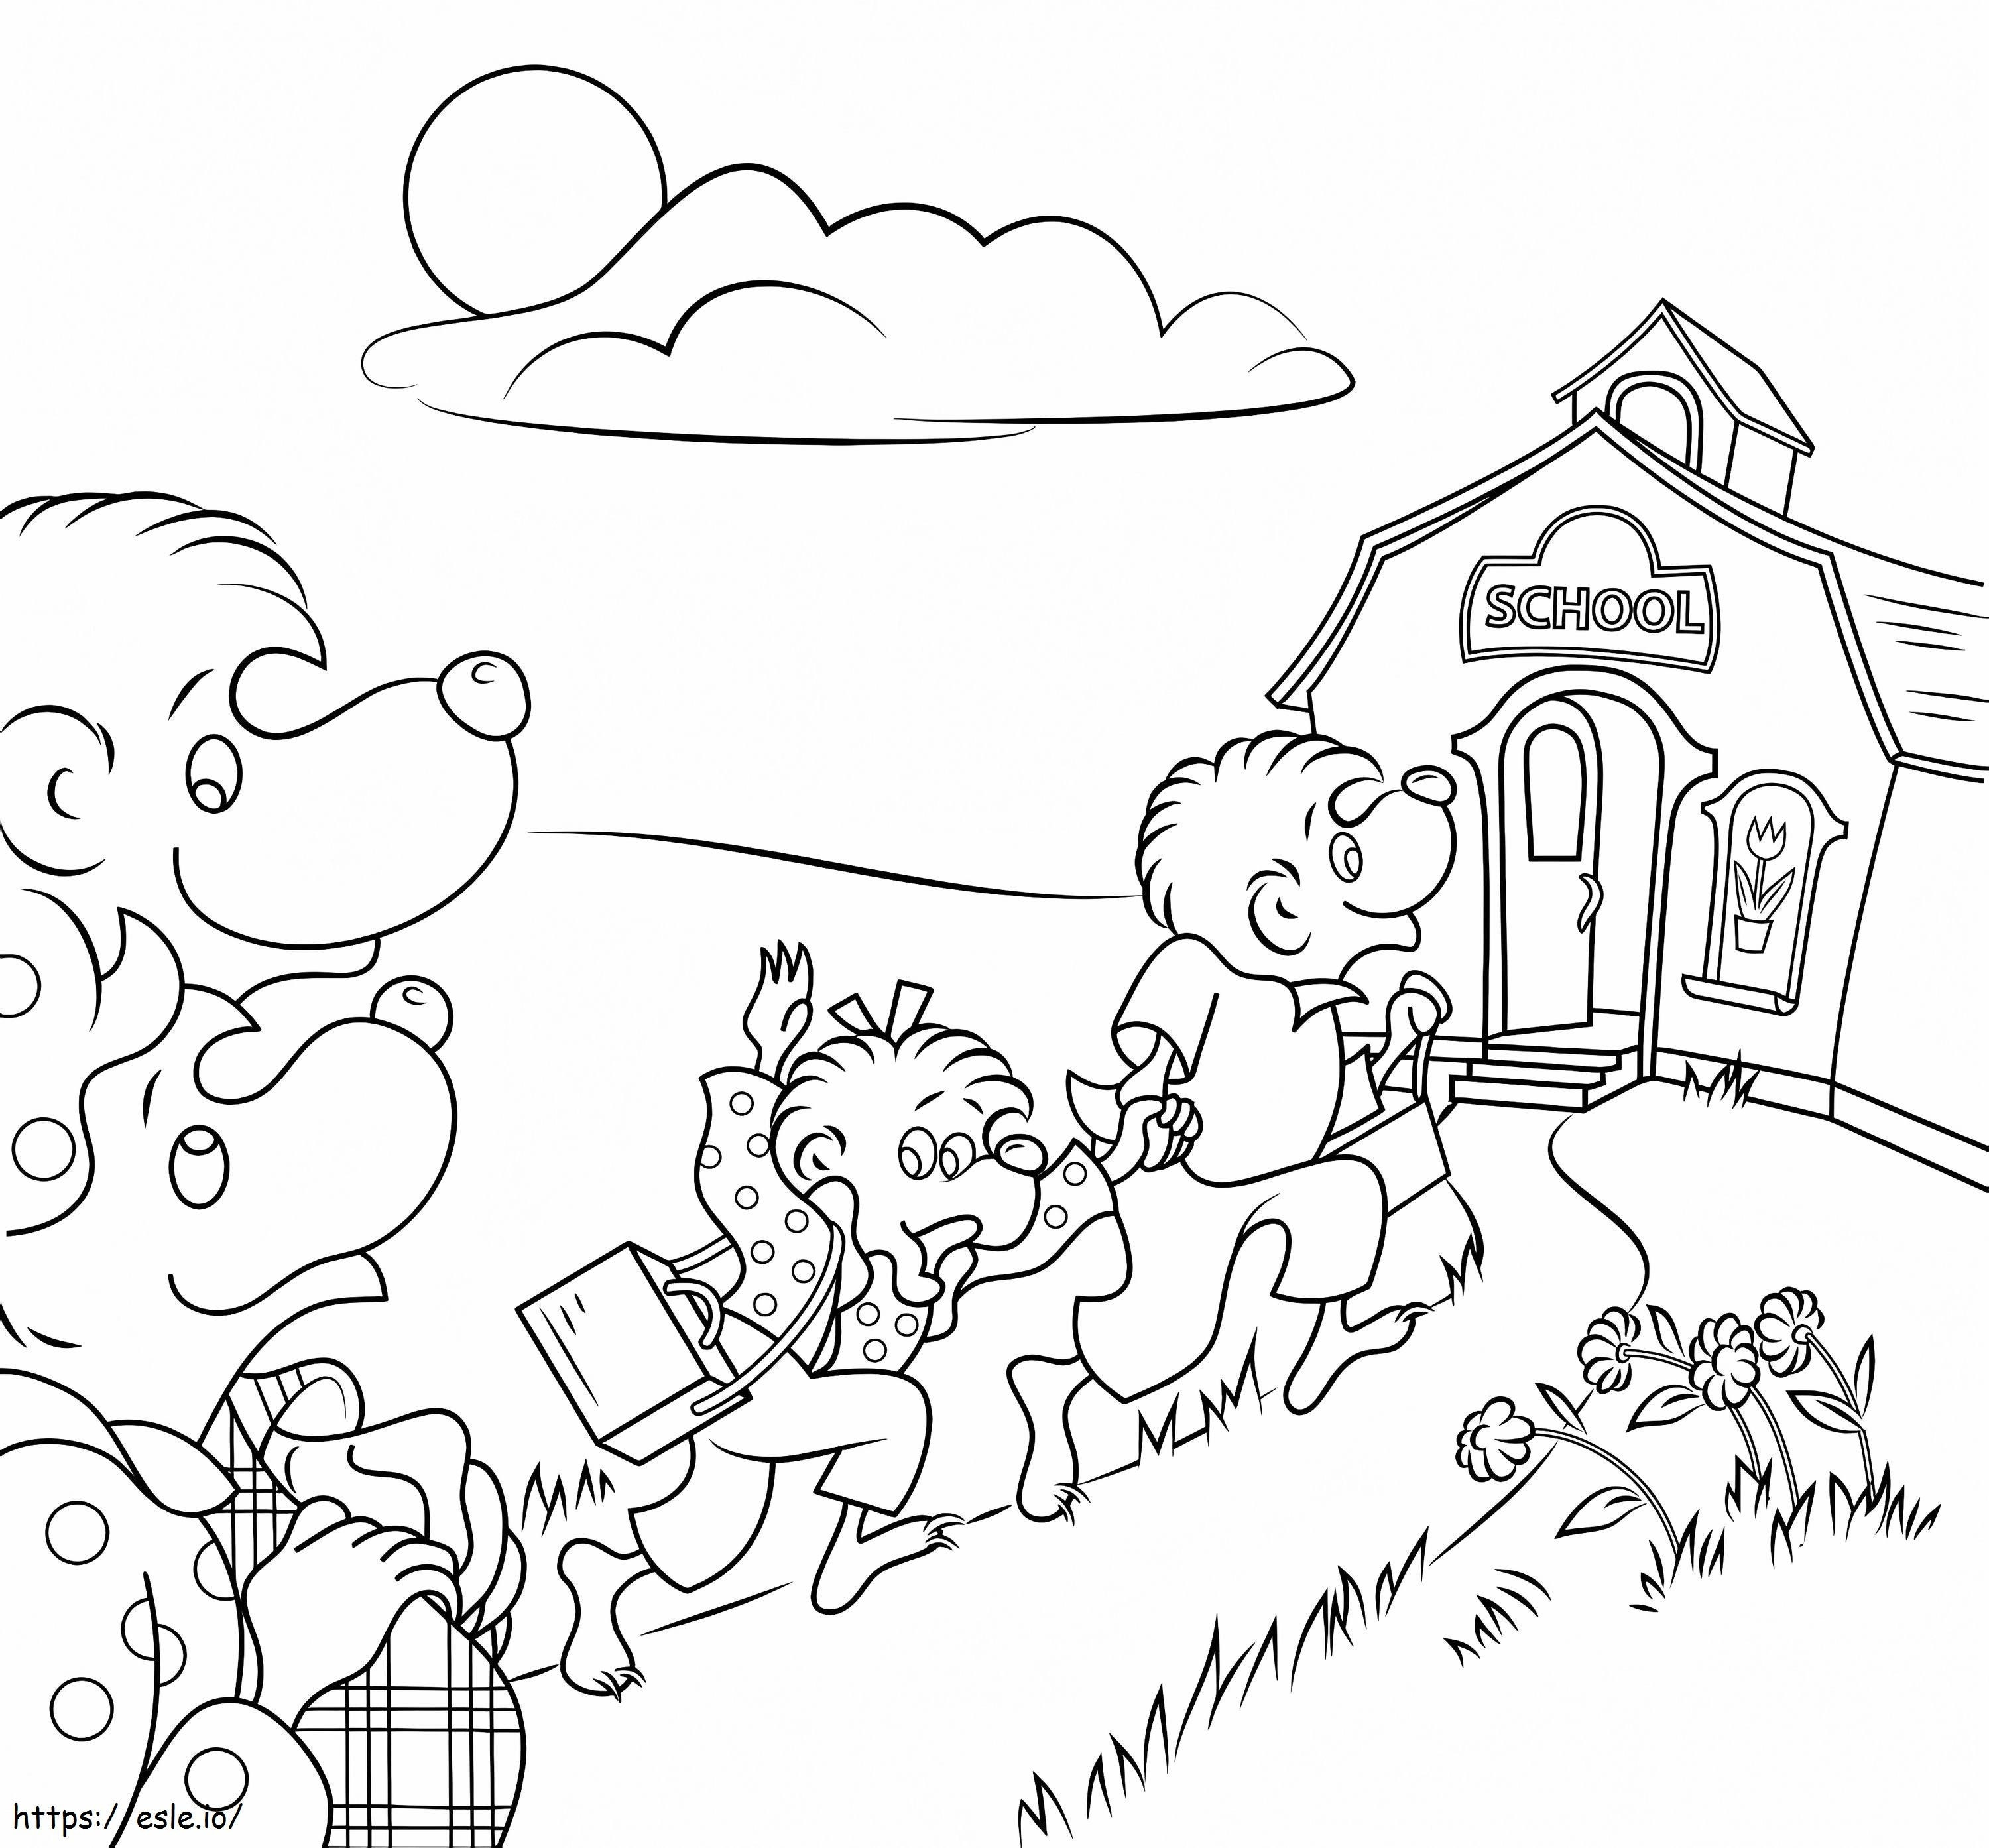 Coloriage Les ours de Berenstain vont à l'école à imprimer dessin